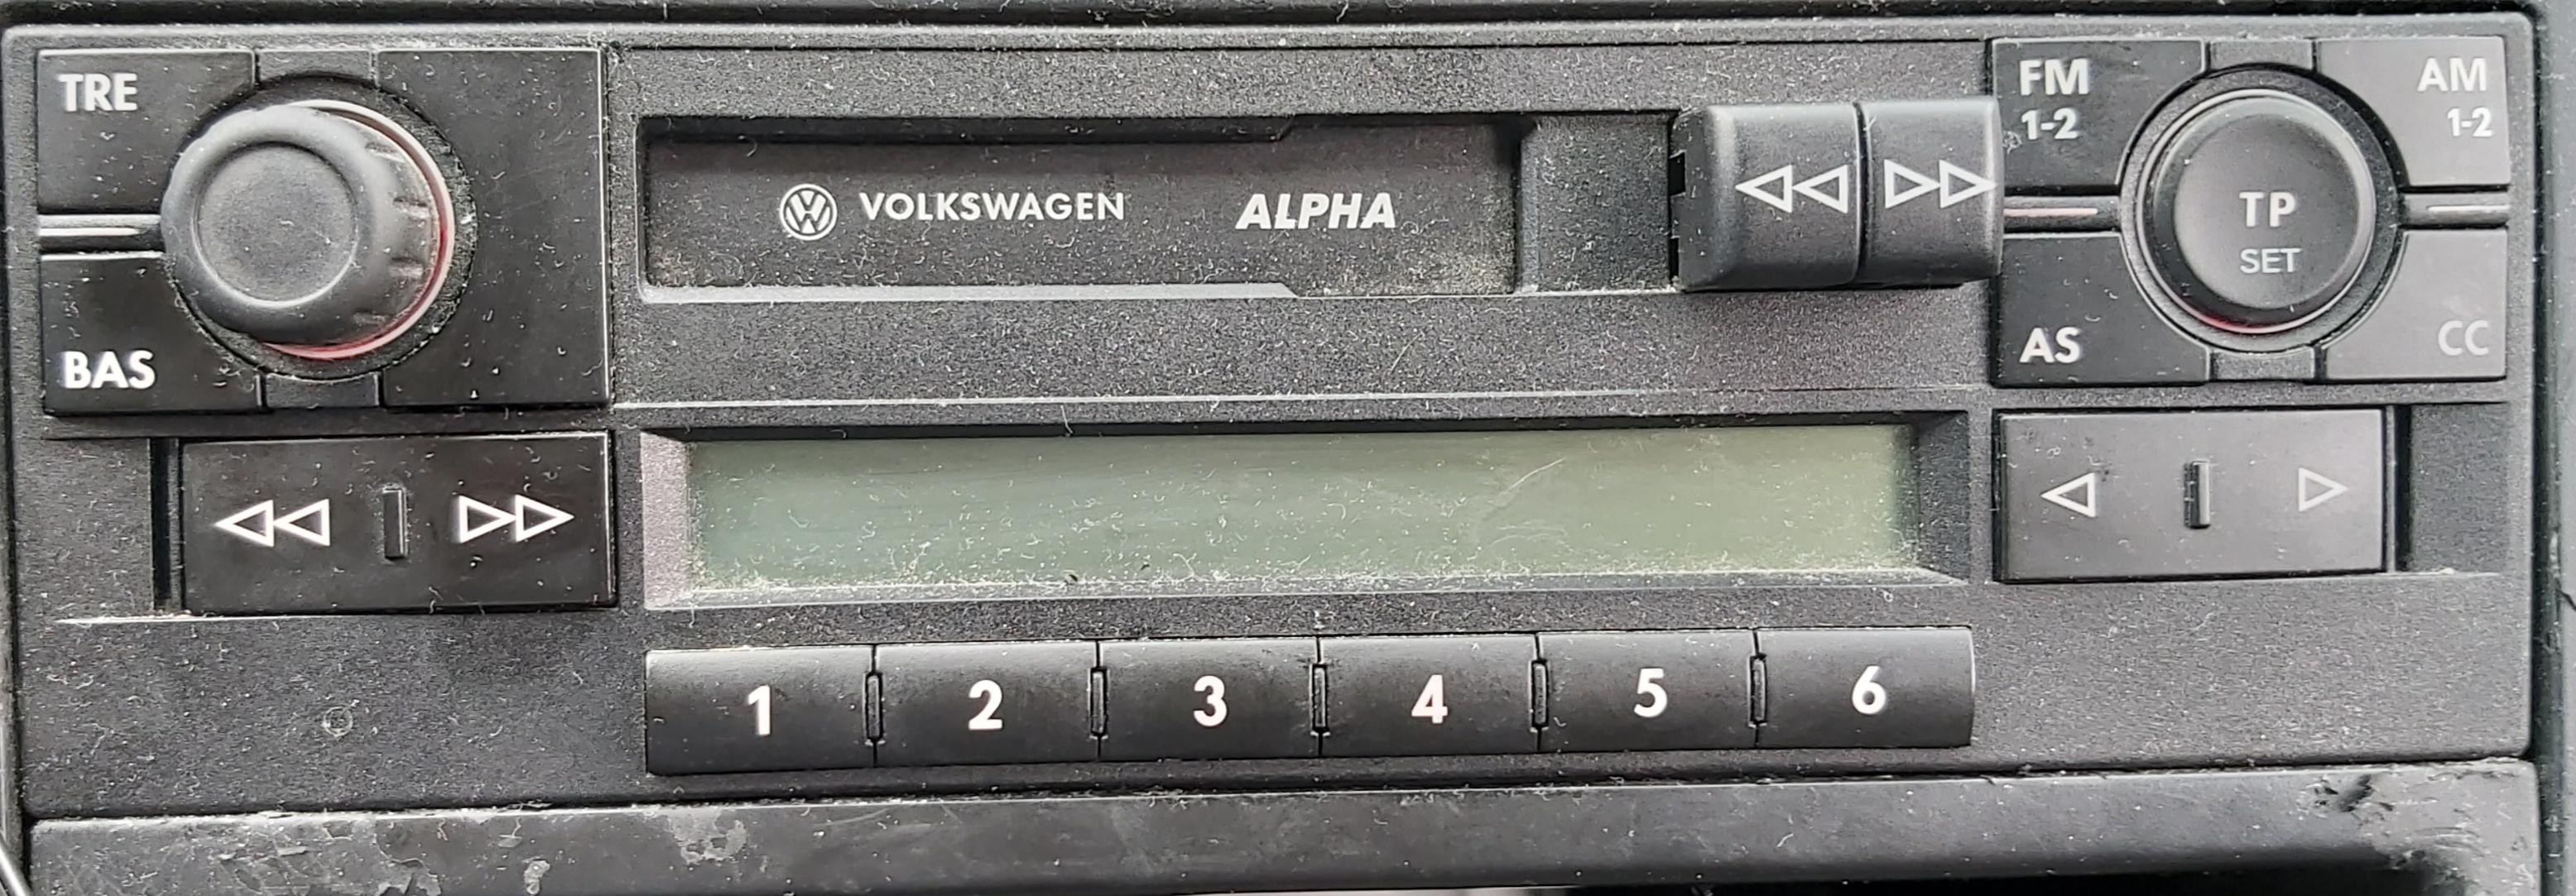 Wie bestätige ich nach Eingabe des VW Alpha Radio Code